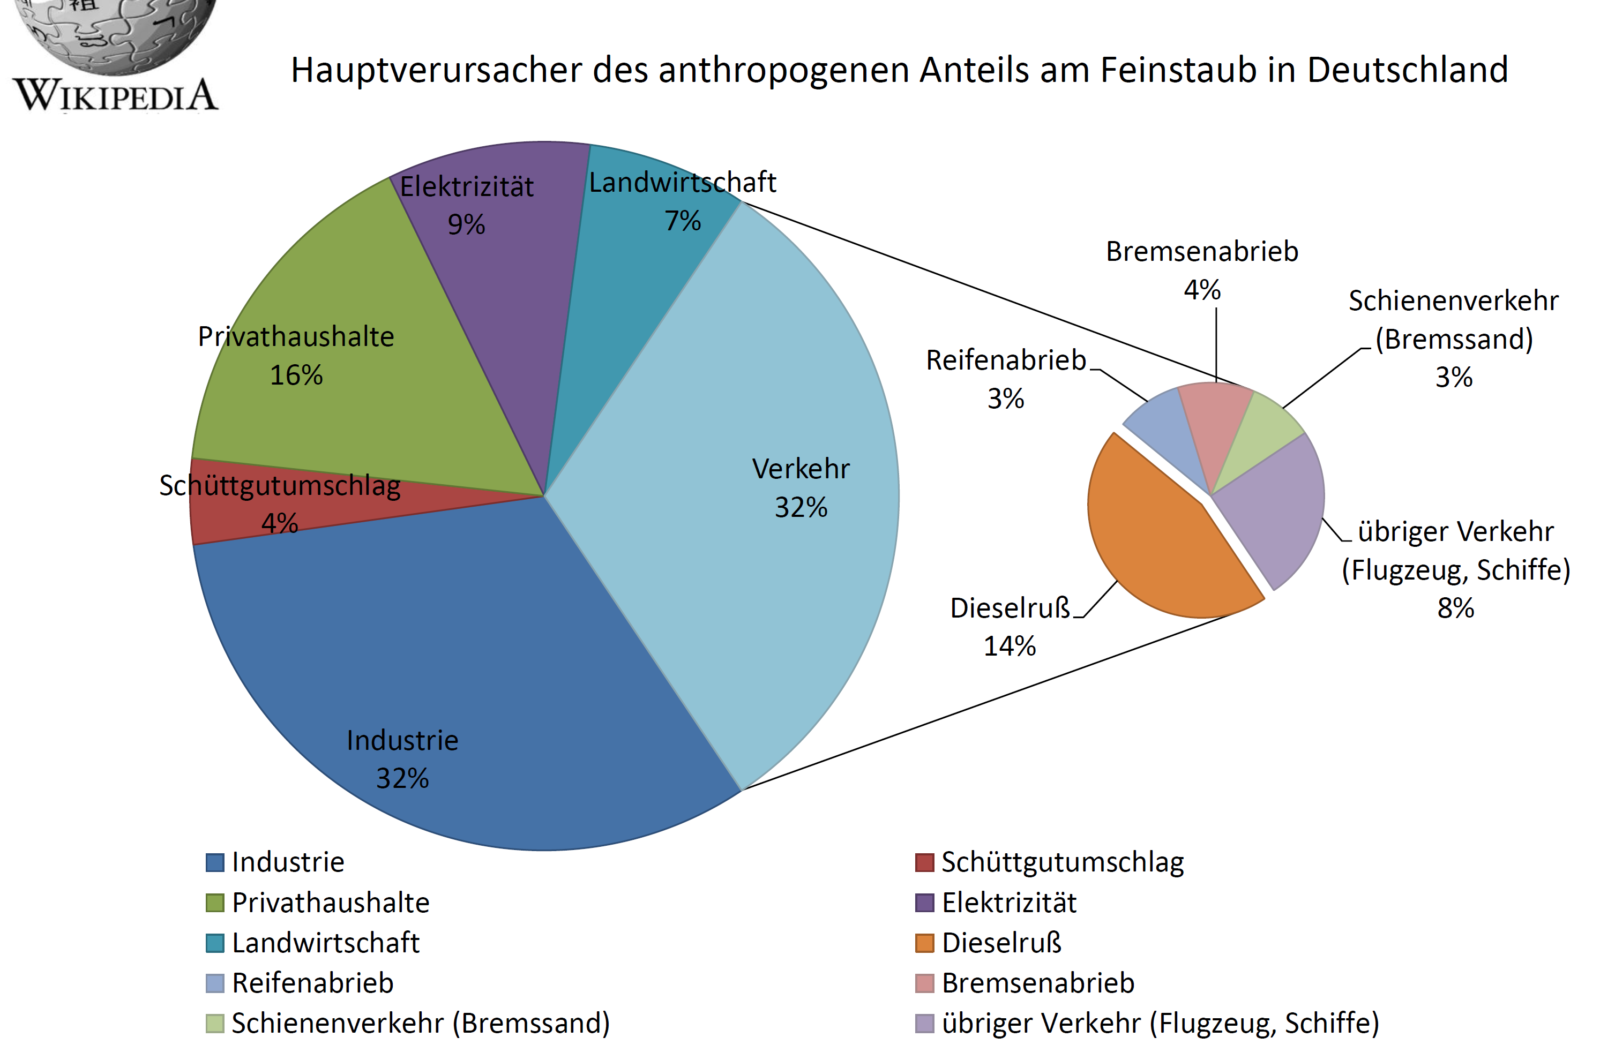 Hauptverursacher des anthropogenen (vom Menschen verursachten) Anteils am Feinstaub in Deutschland